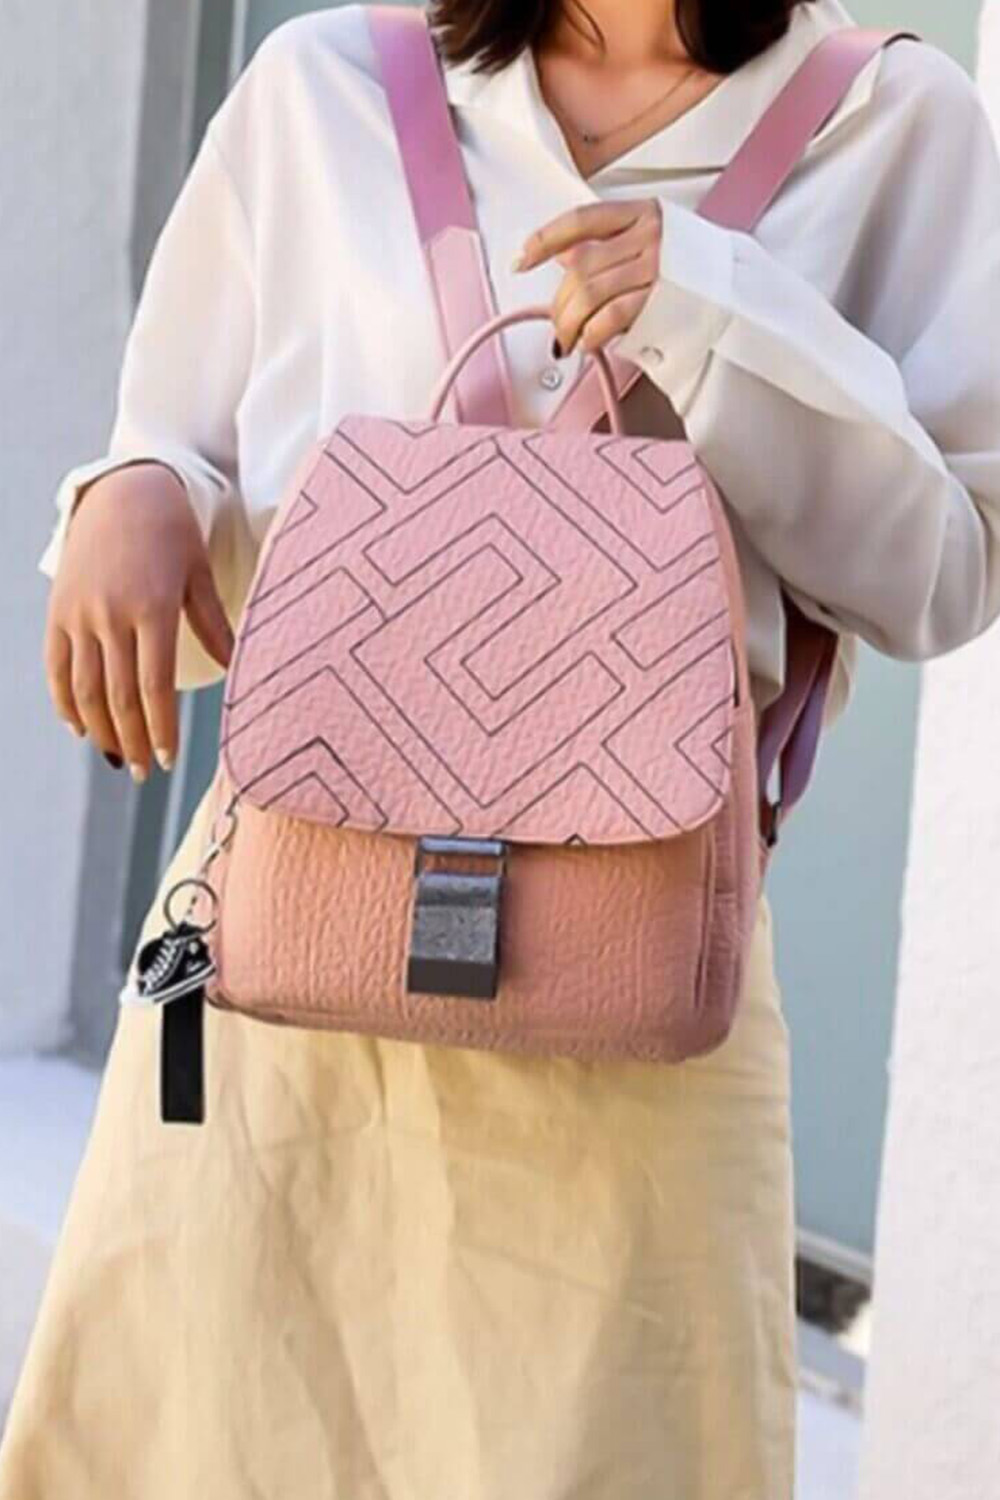 Ροζ backpack με ανάγλυφο σχέδιο